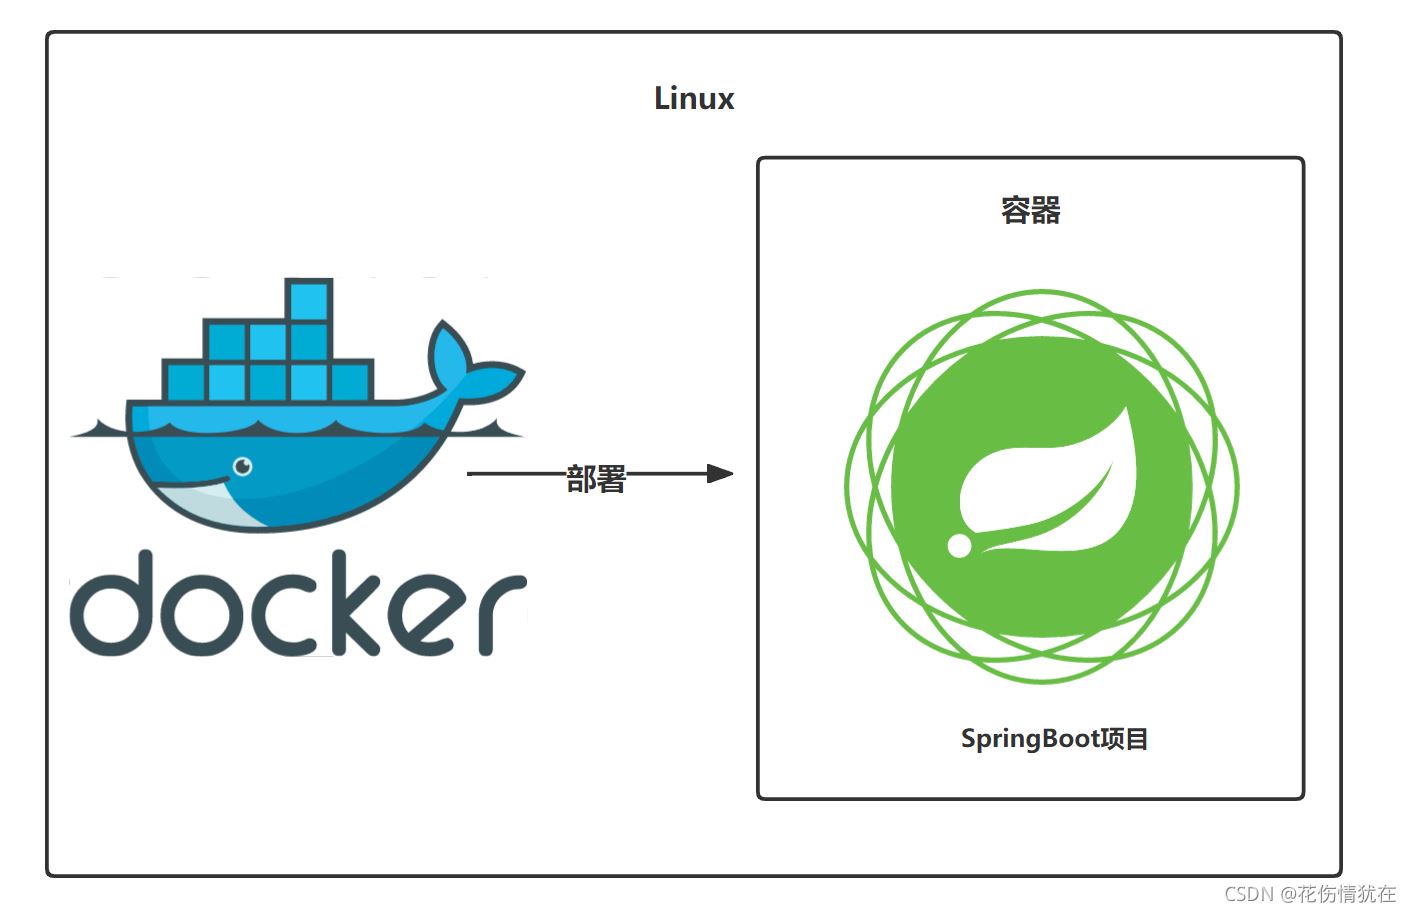 Docker部署SpringBoot应用的实现步骤